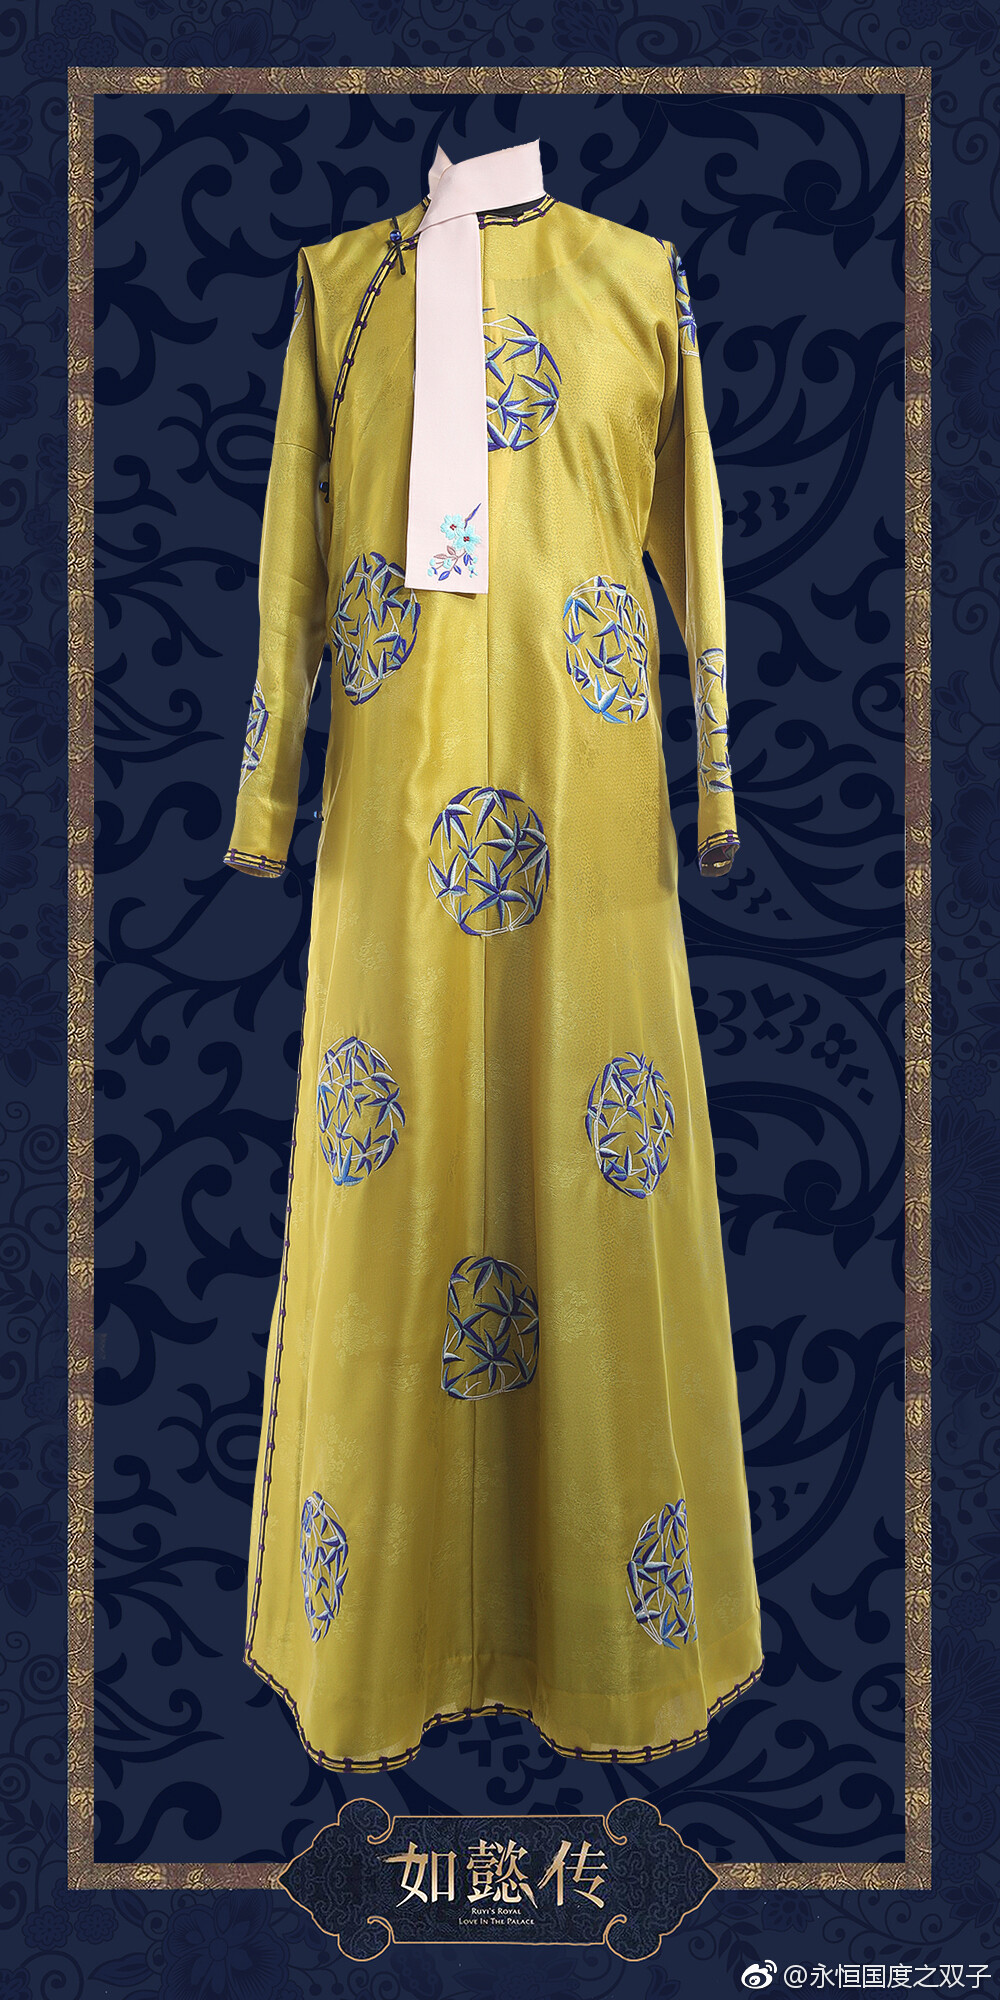 【衣】姜黄色缂丝绣团竹花纹的衣服 -『 如懿传』